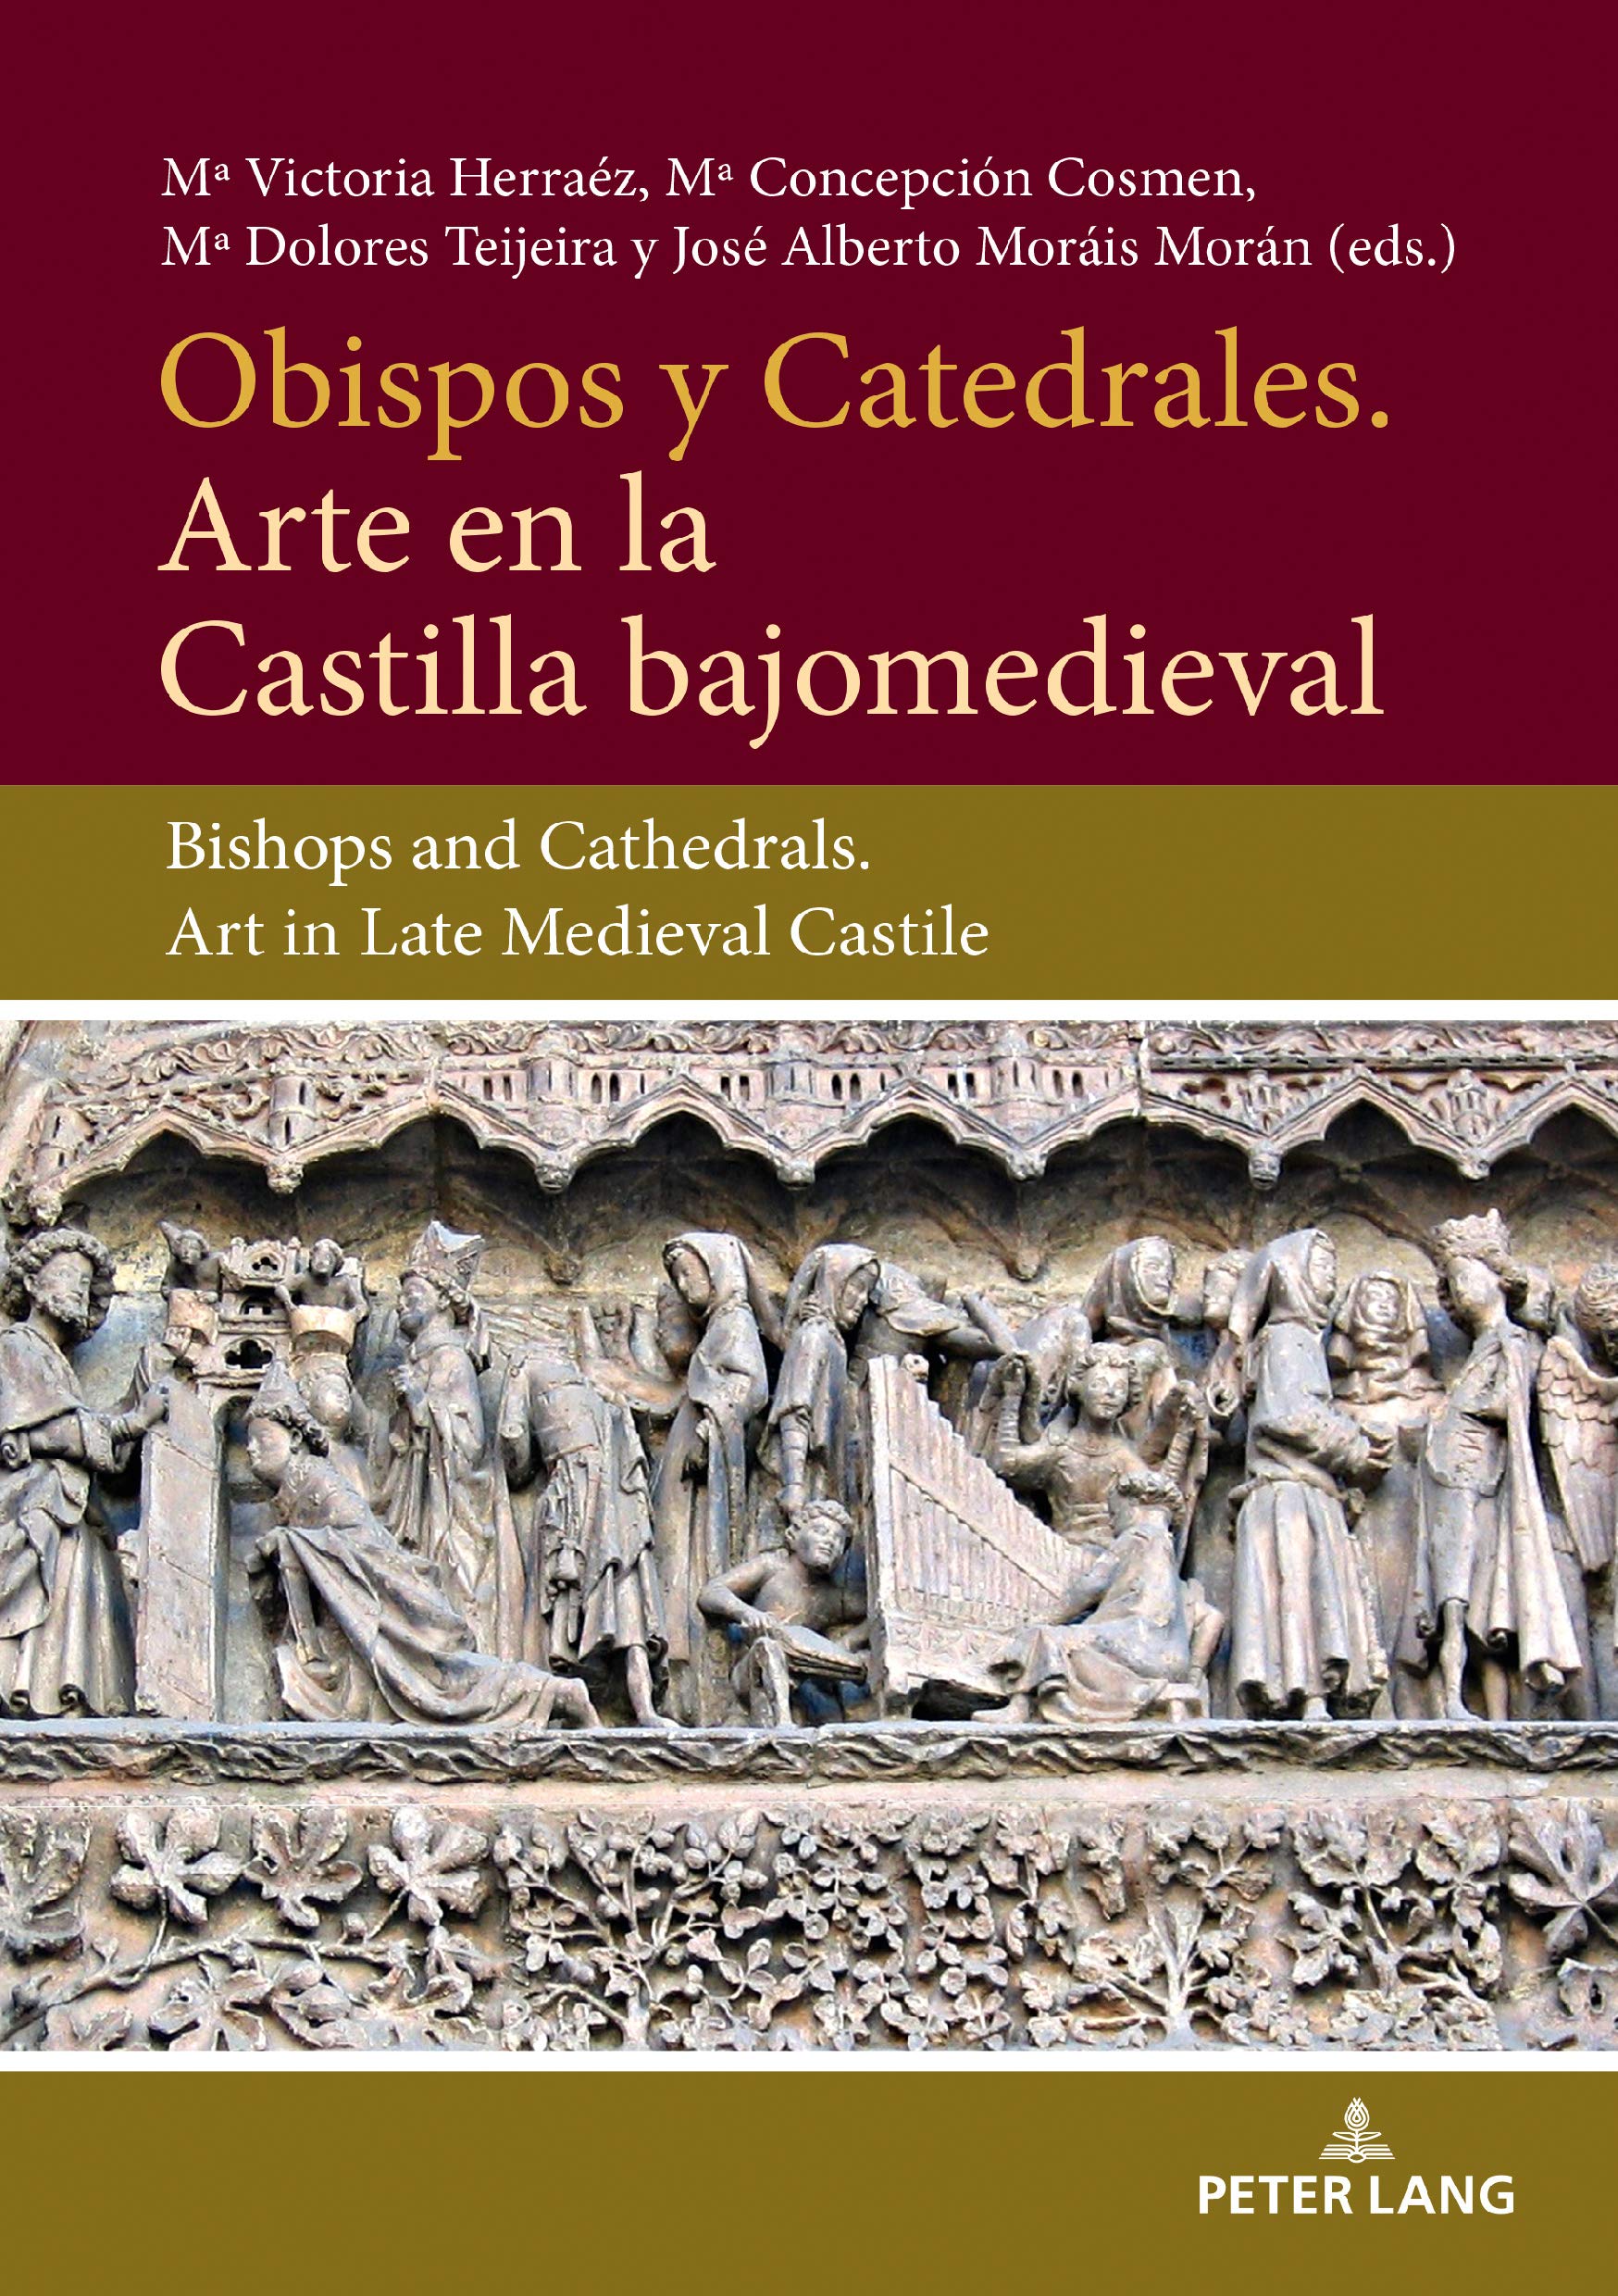 Imagen de portada del libro Obispos y catedrales